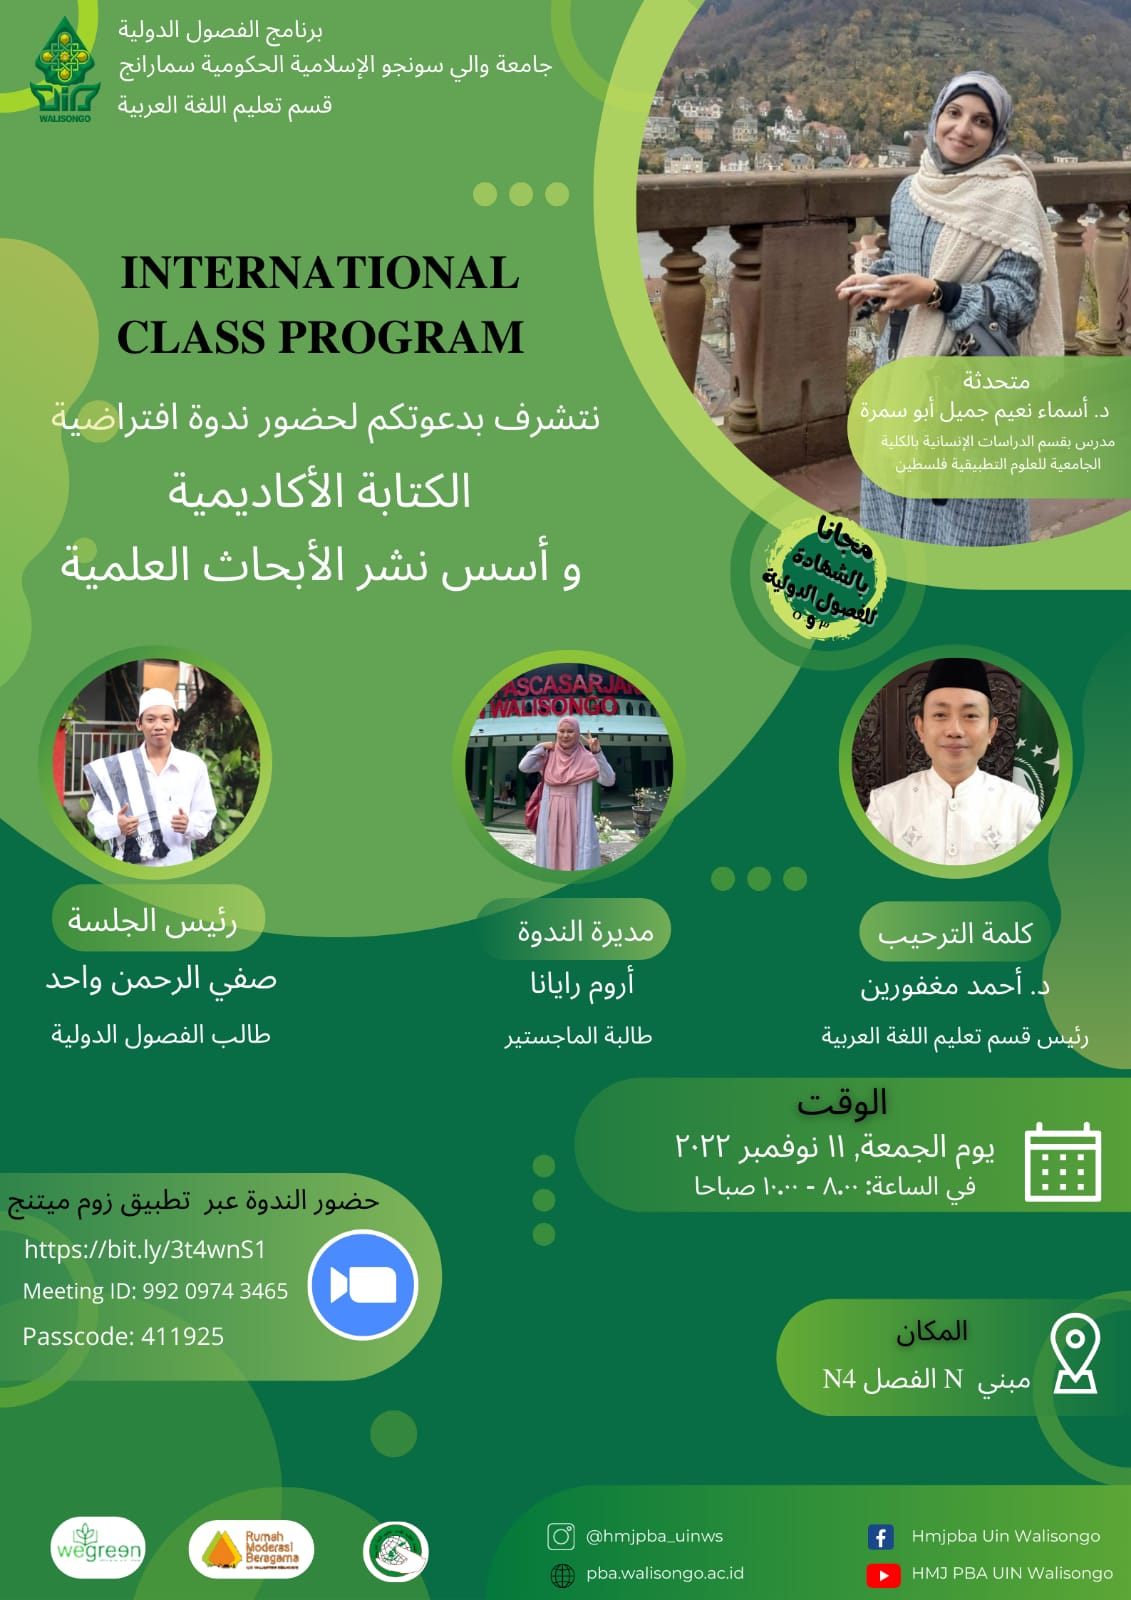 برنامج الفصول الدولية قسم تعليم اللغة العربية مع د. أسماء نعيم جميل أبو سمرة